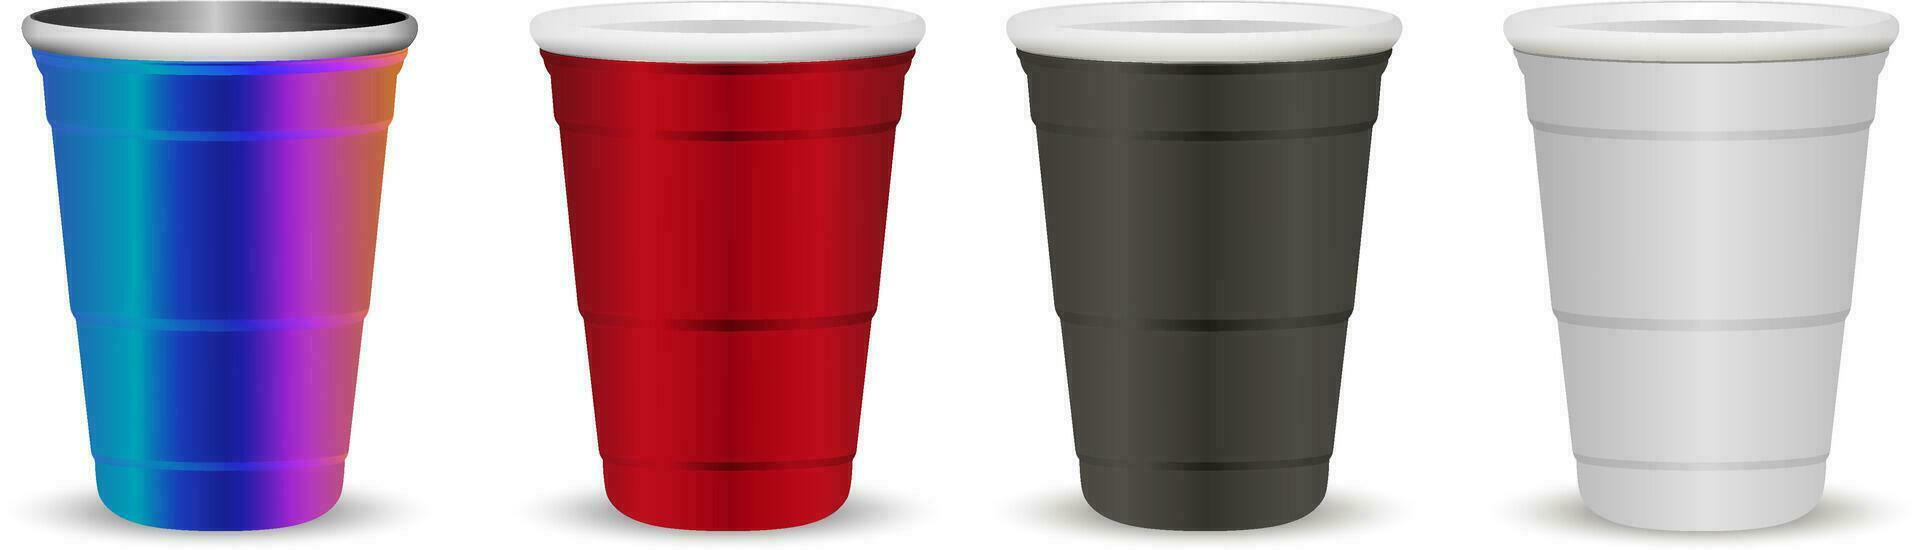 fiesta tazas burlarse de arriba conjunto realista 3d vector ilustración. desechable papel, el plastico y metálico tazas para bebidas y juegos, celebracion.